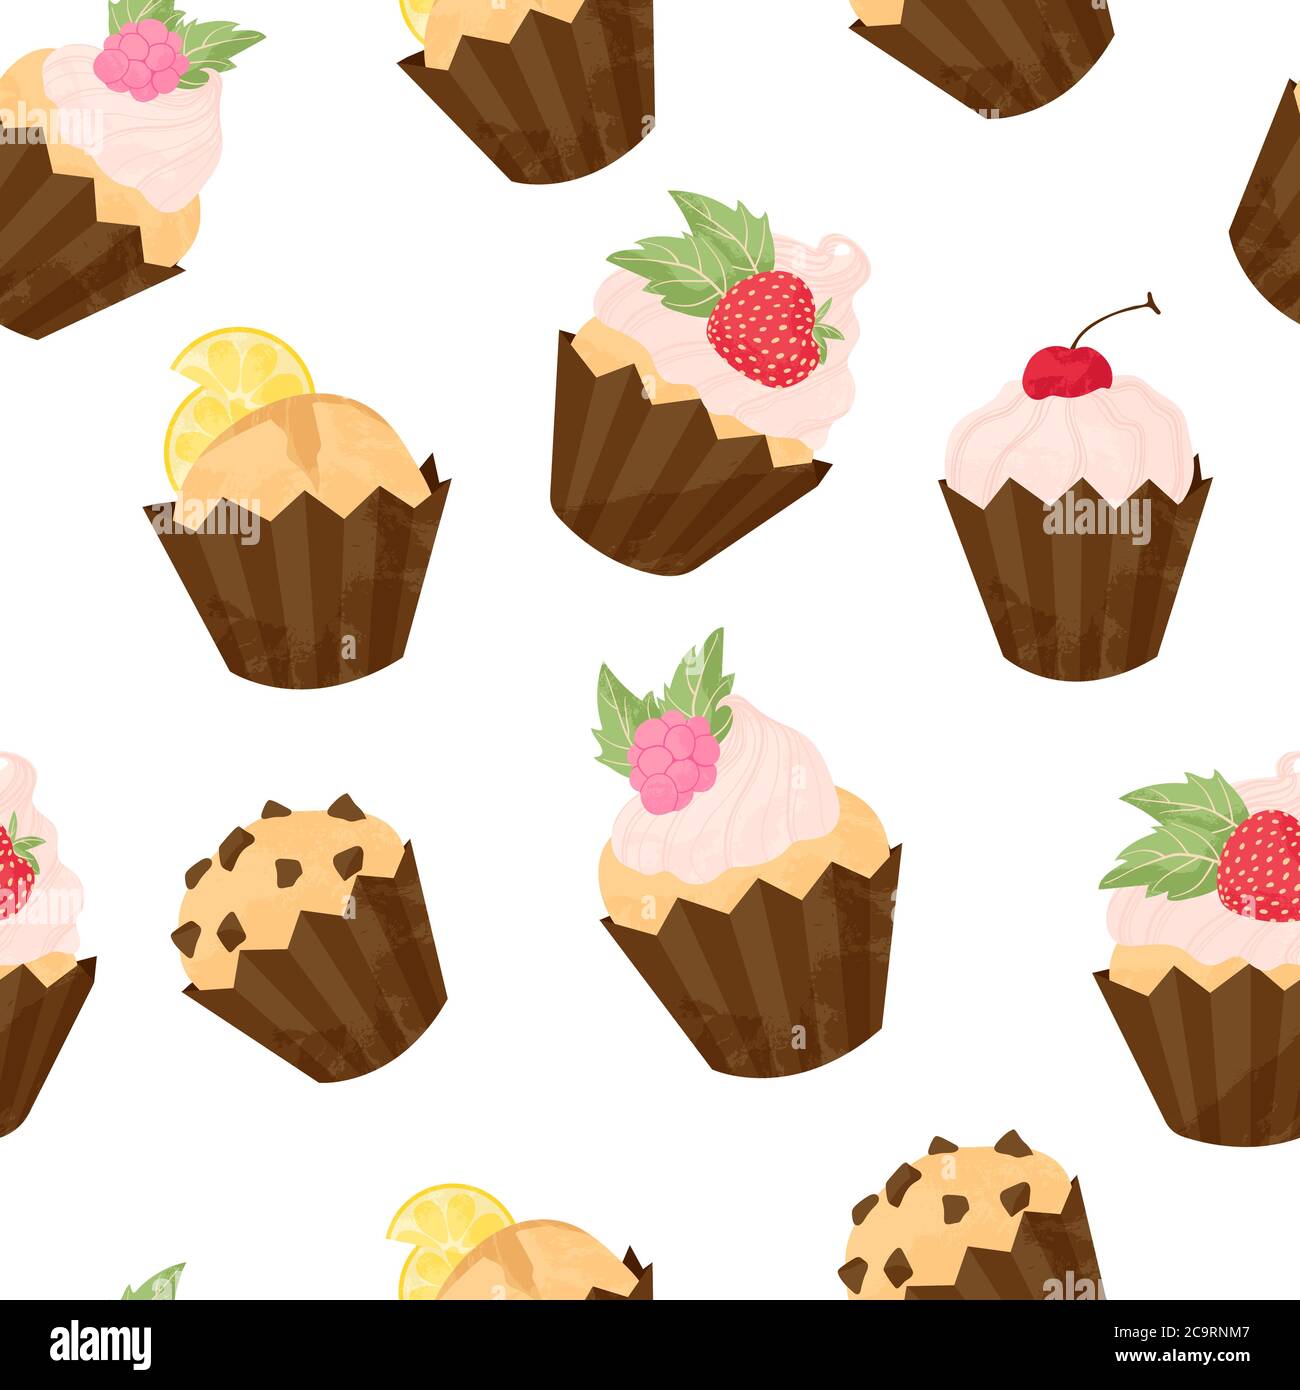 Verschiedene Cupcake und Muffin Vektor nahtlose Muster in flachen Cartoons Stil. Alles gute zum Geburtstag Cupcake mit Früchten und Beeren Hintergrund. Niedliche bunte de Stock Vektor